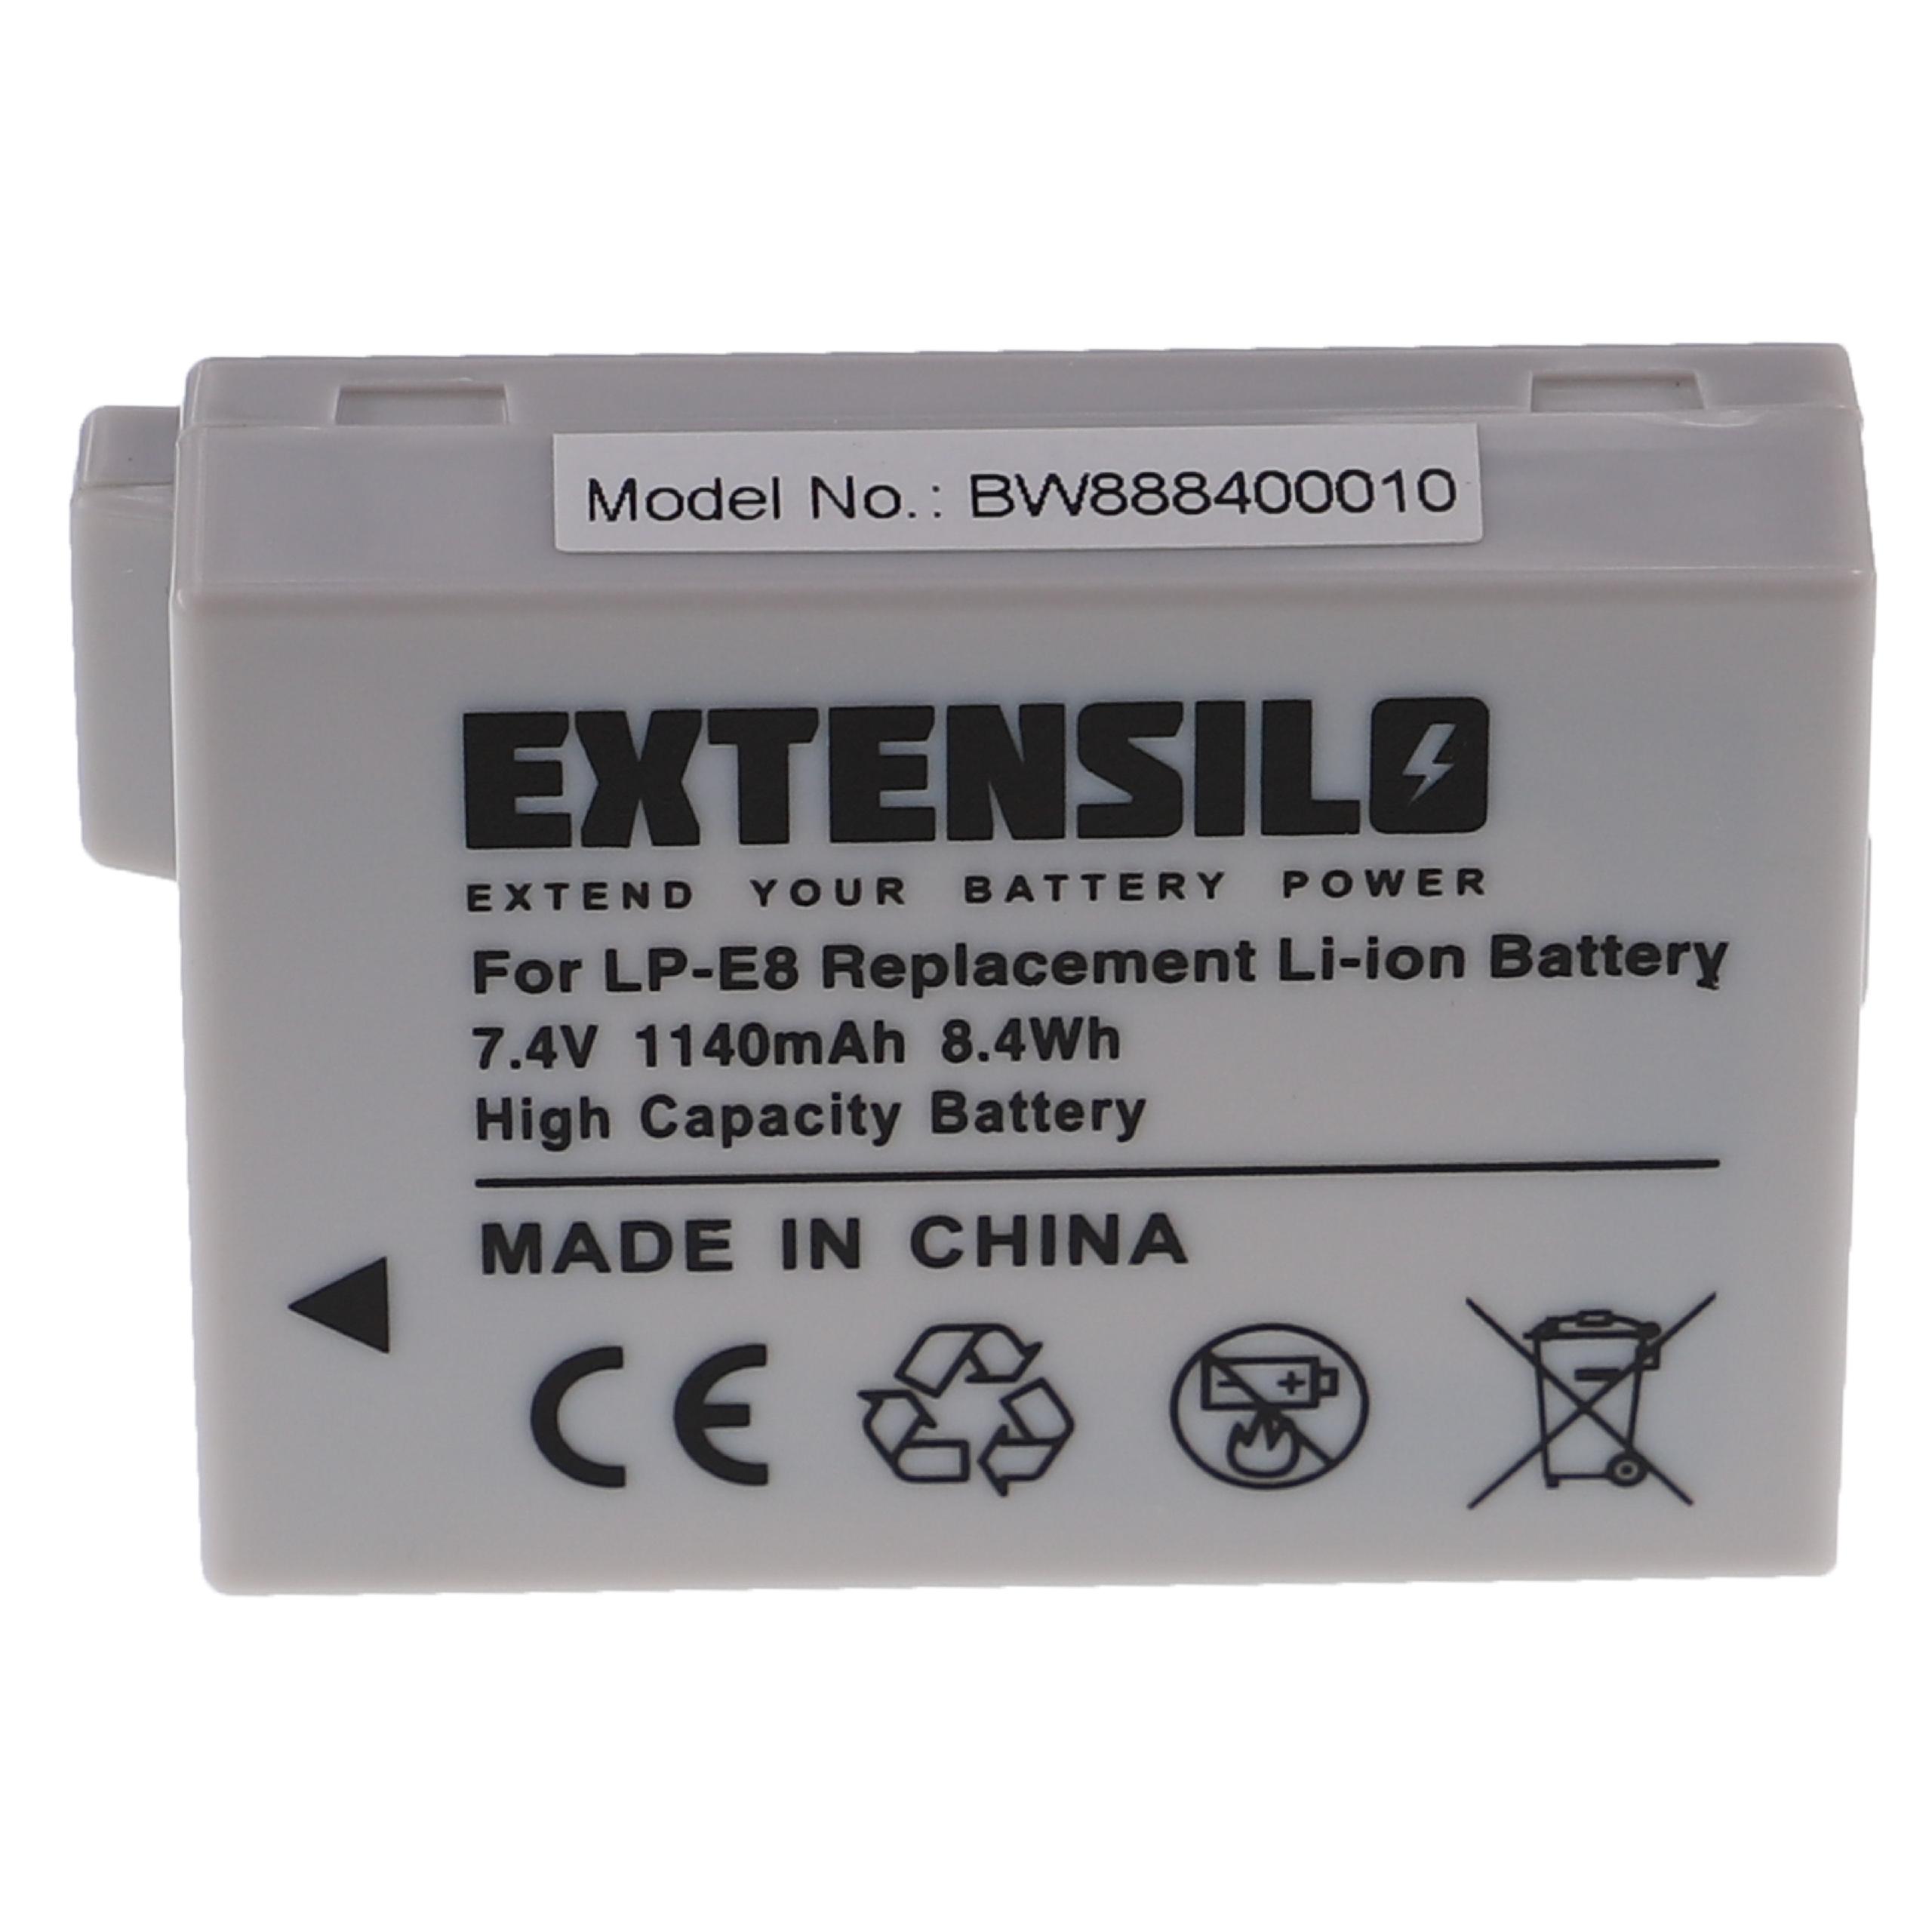 Batterie remplace Canon LP-E8 pour appareil photo - 1140mAh 7,4V Li-ion